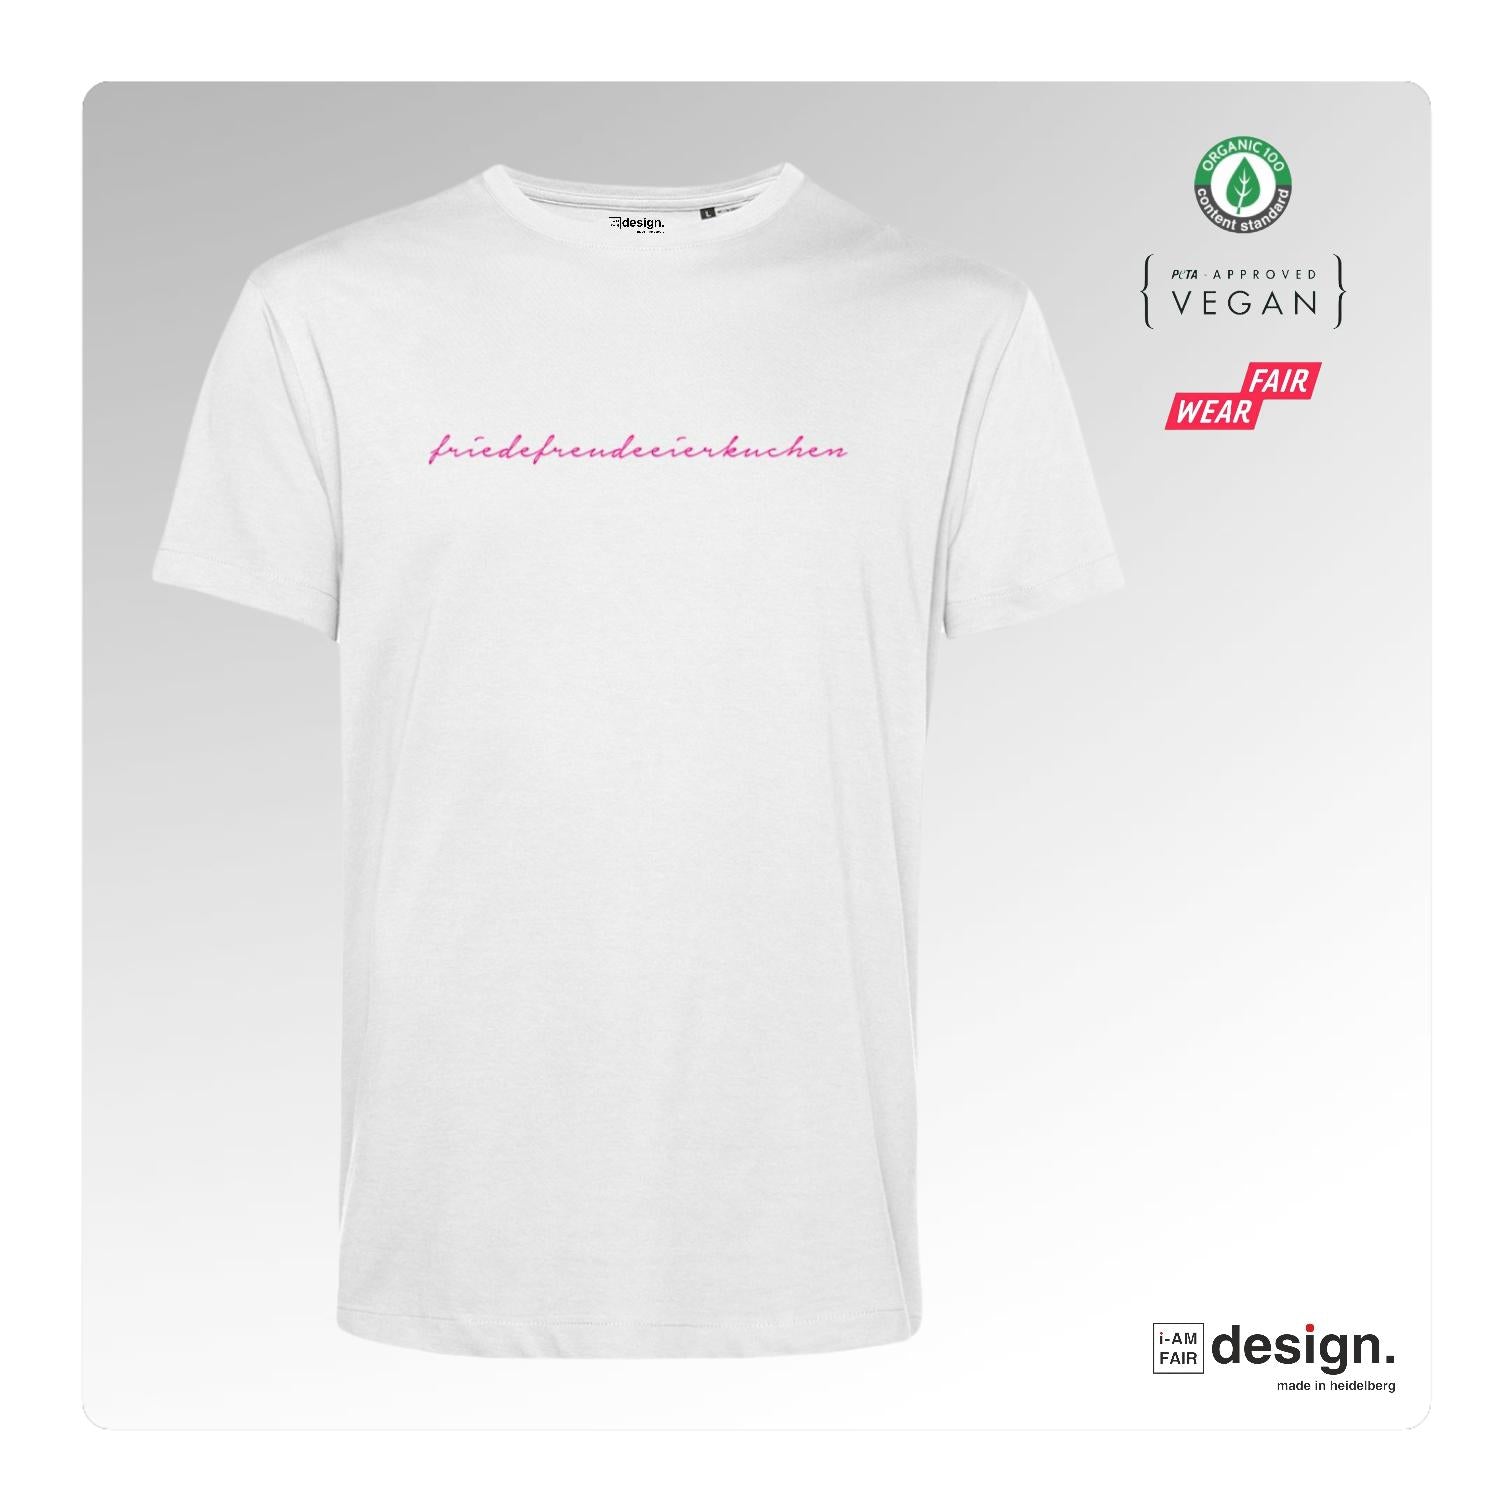 Unisex Bio-T-Shirt "friedefreudeeierkuchen"